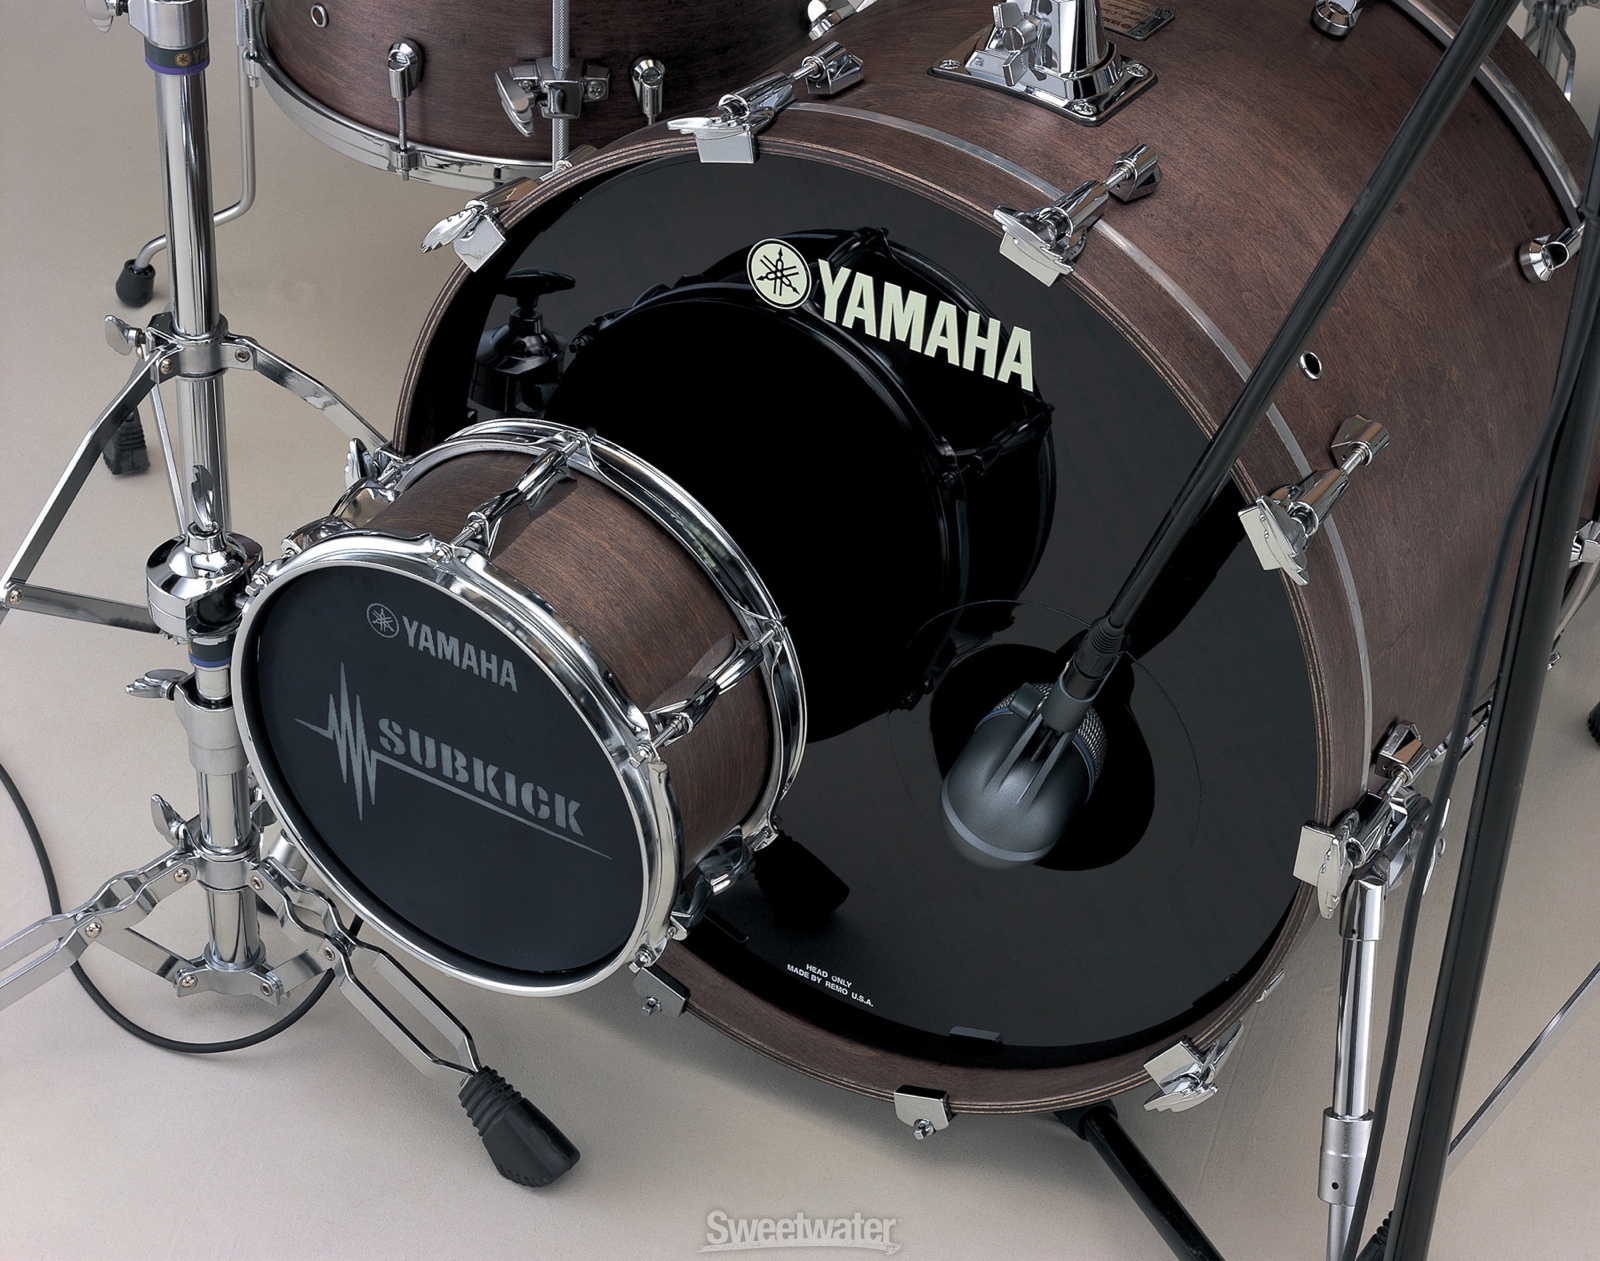 K bass. Yamaha subkick Mic. Микрофон Yamaha subkick. Yamaha бас барабан. Yamaha Kick Drum Mic.